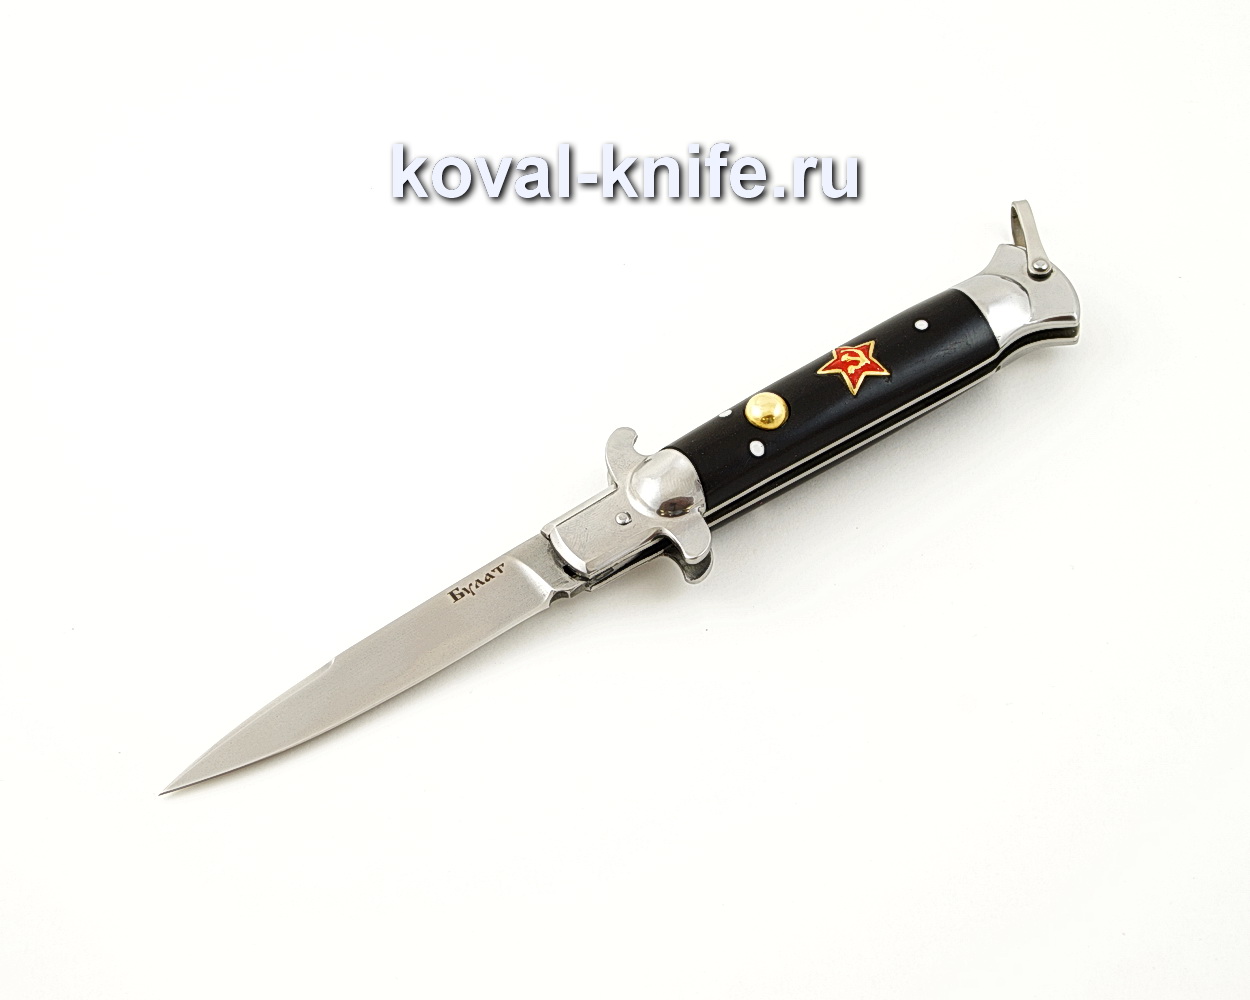 Выкидной нож Флинт со звездой из булатной стали с рукоятью из эбонита A543